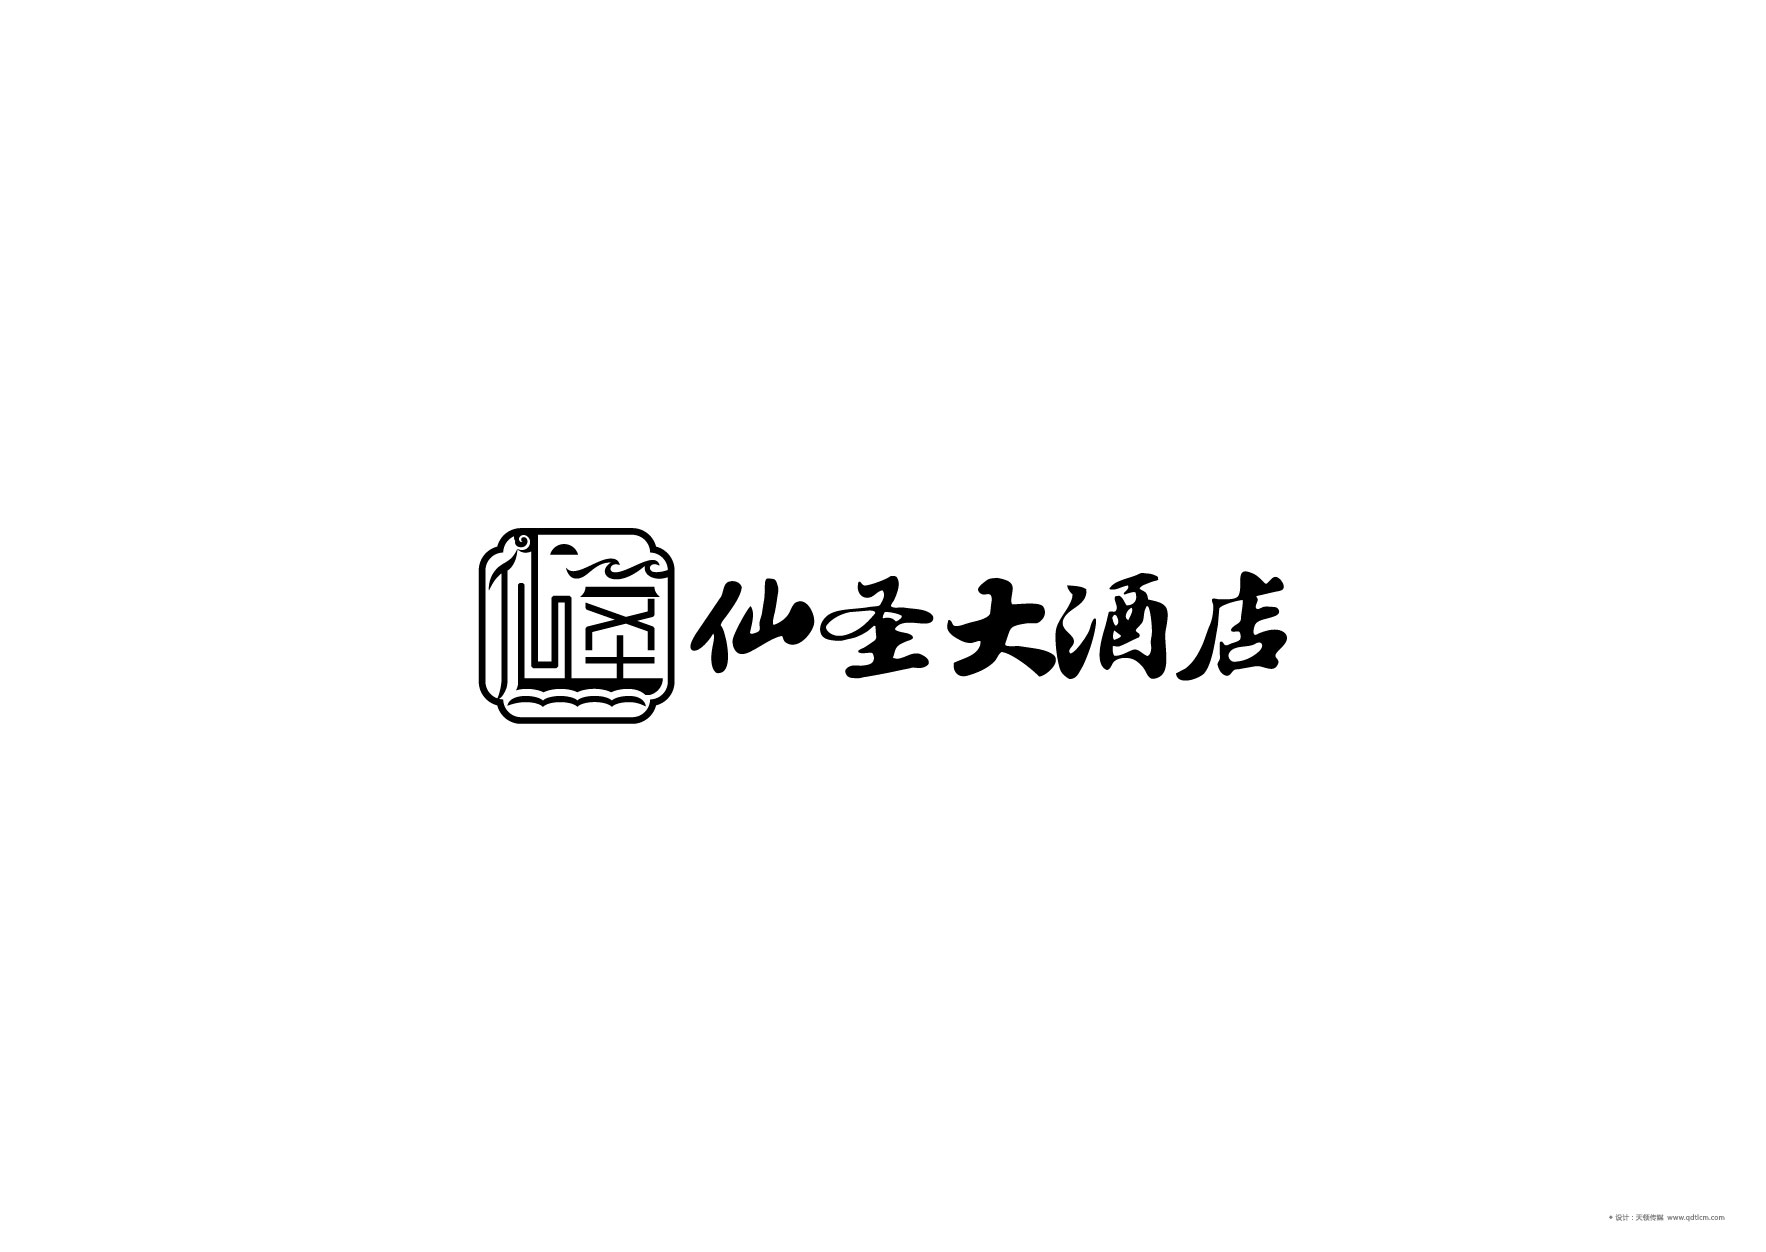 仙圣大酒店标志定稿-06.jpg